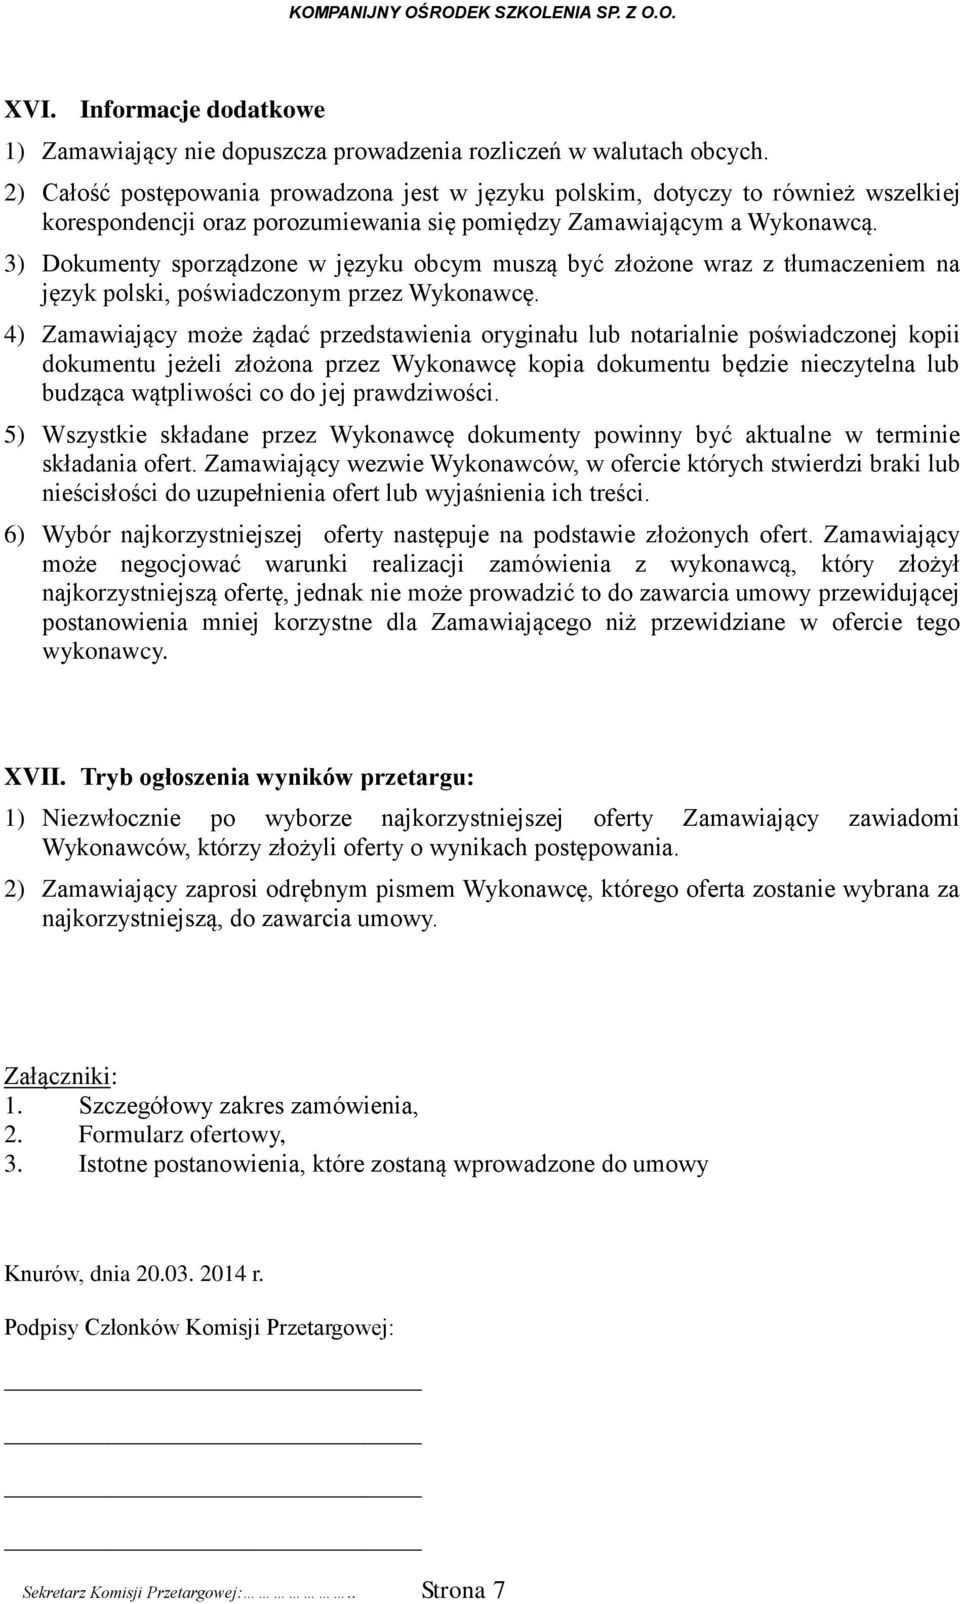 3) Dokumenty sporządzone w języku obcym muszą być złożone wraz z tłumaczeniem na język polski, poświadczonym przez Wykonawcę.